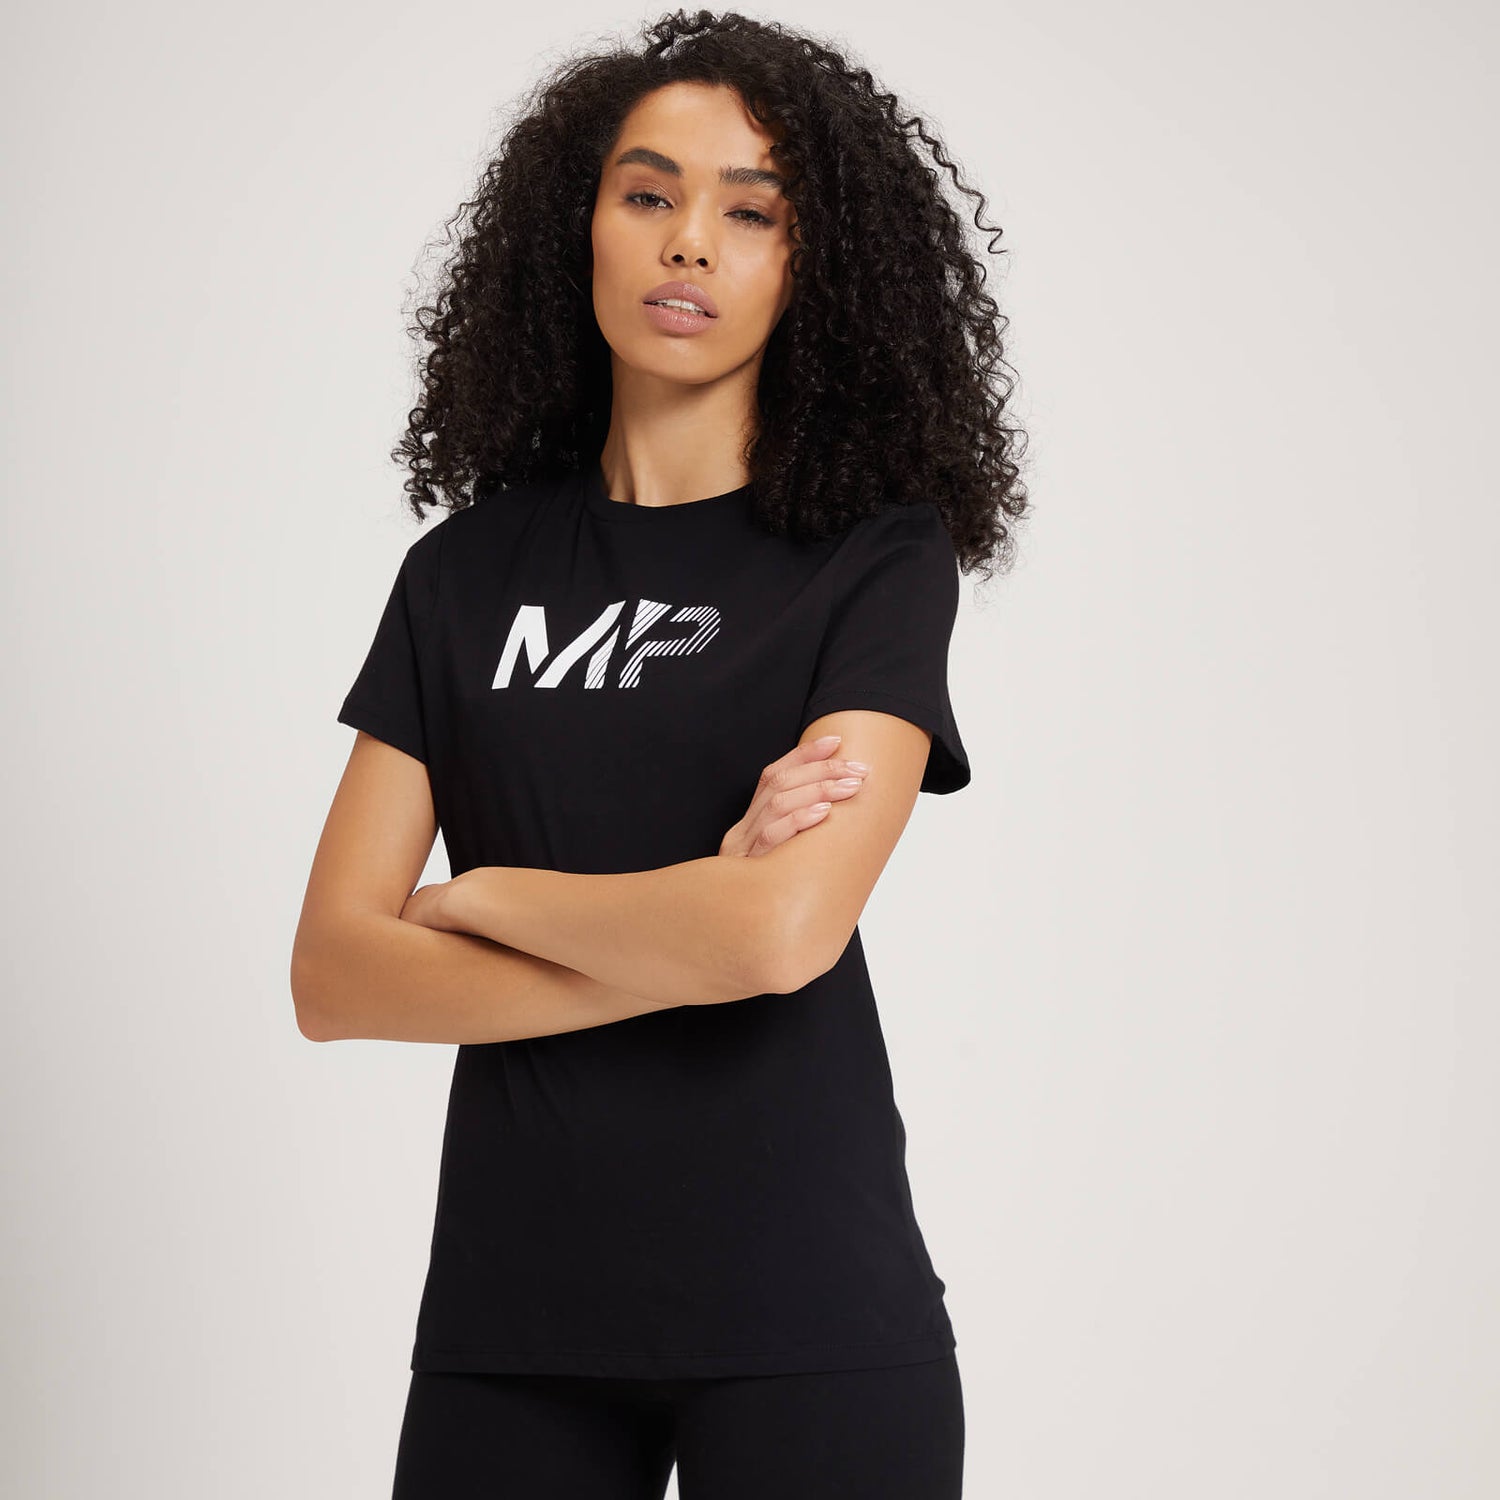 T-shirt MP Fade Graphic pour femmes – Noir - XS